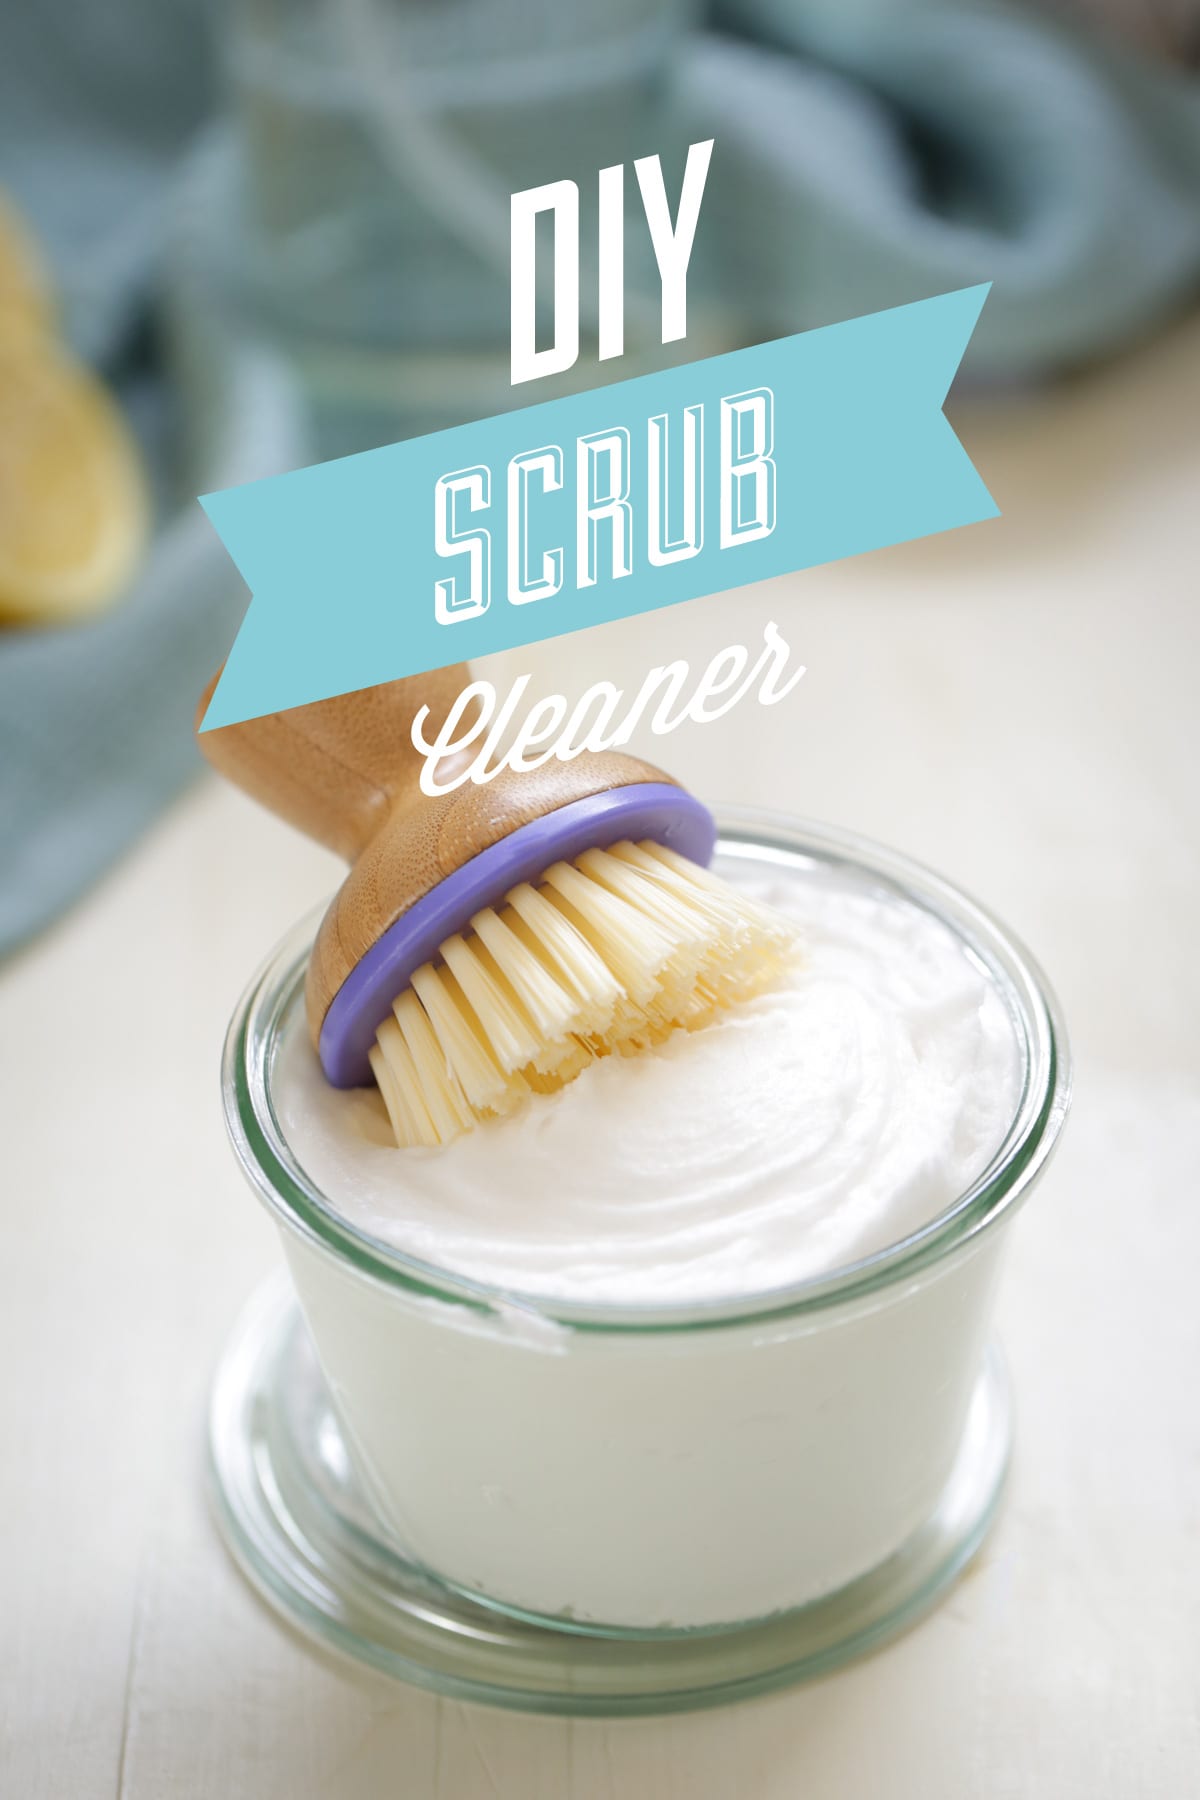 DIY Homemade Scrub Cleaner: Like Soft Scrub